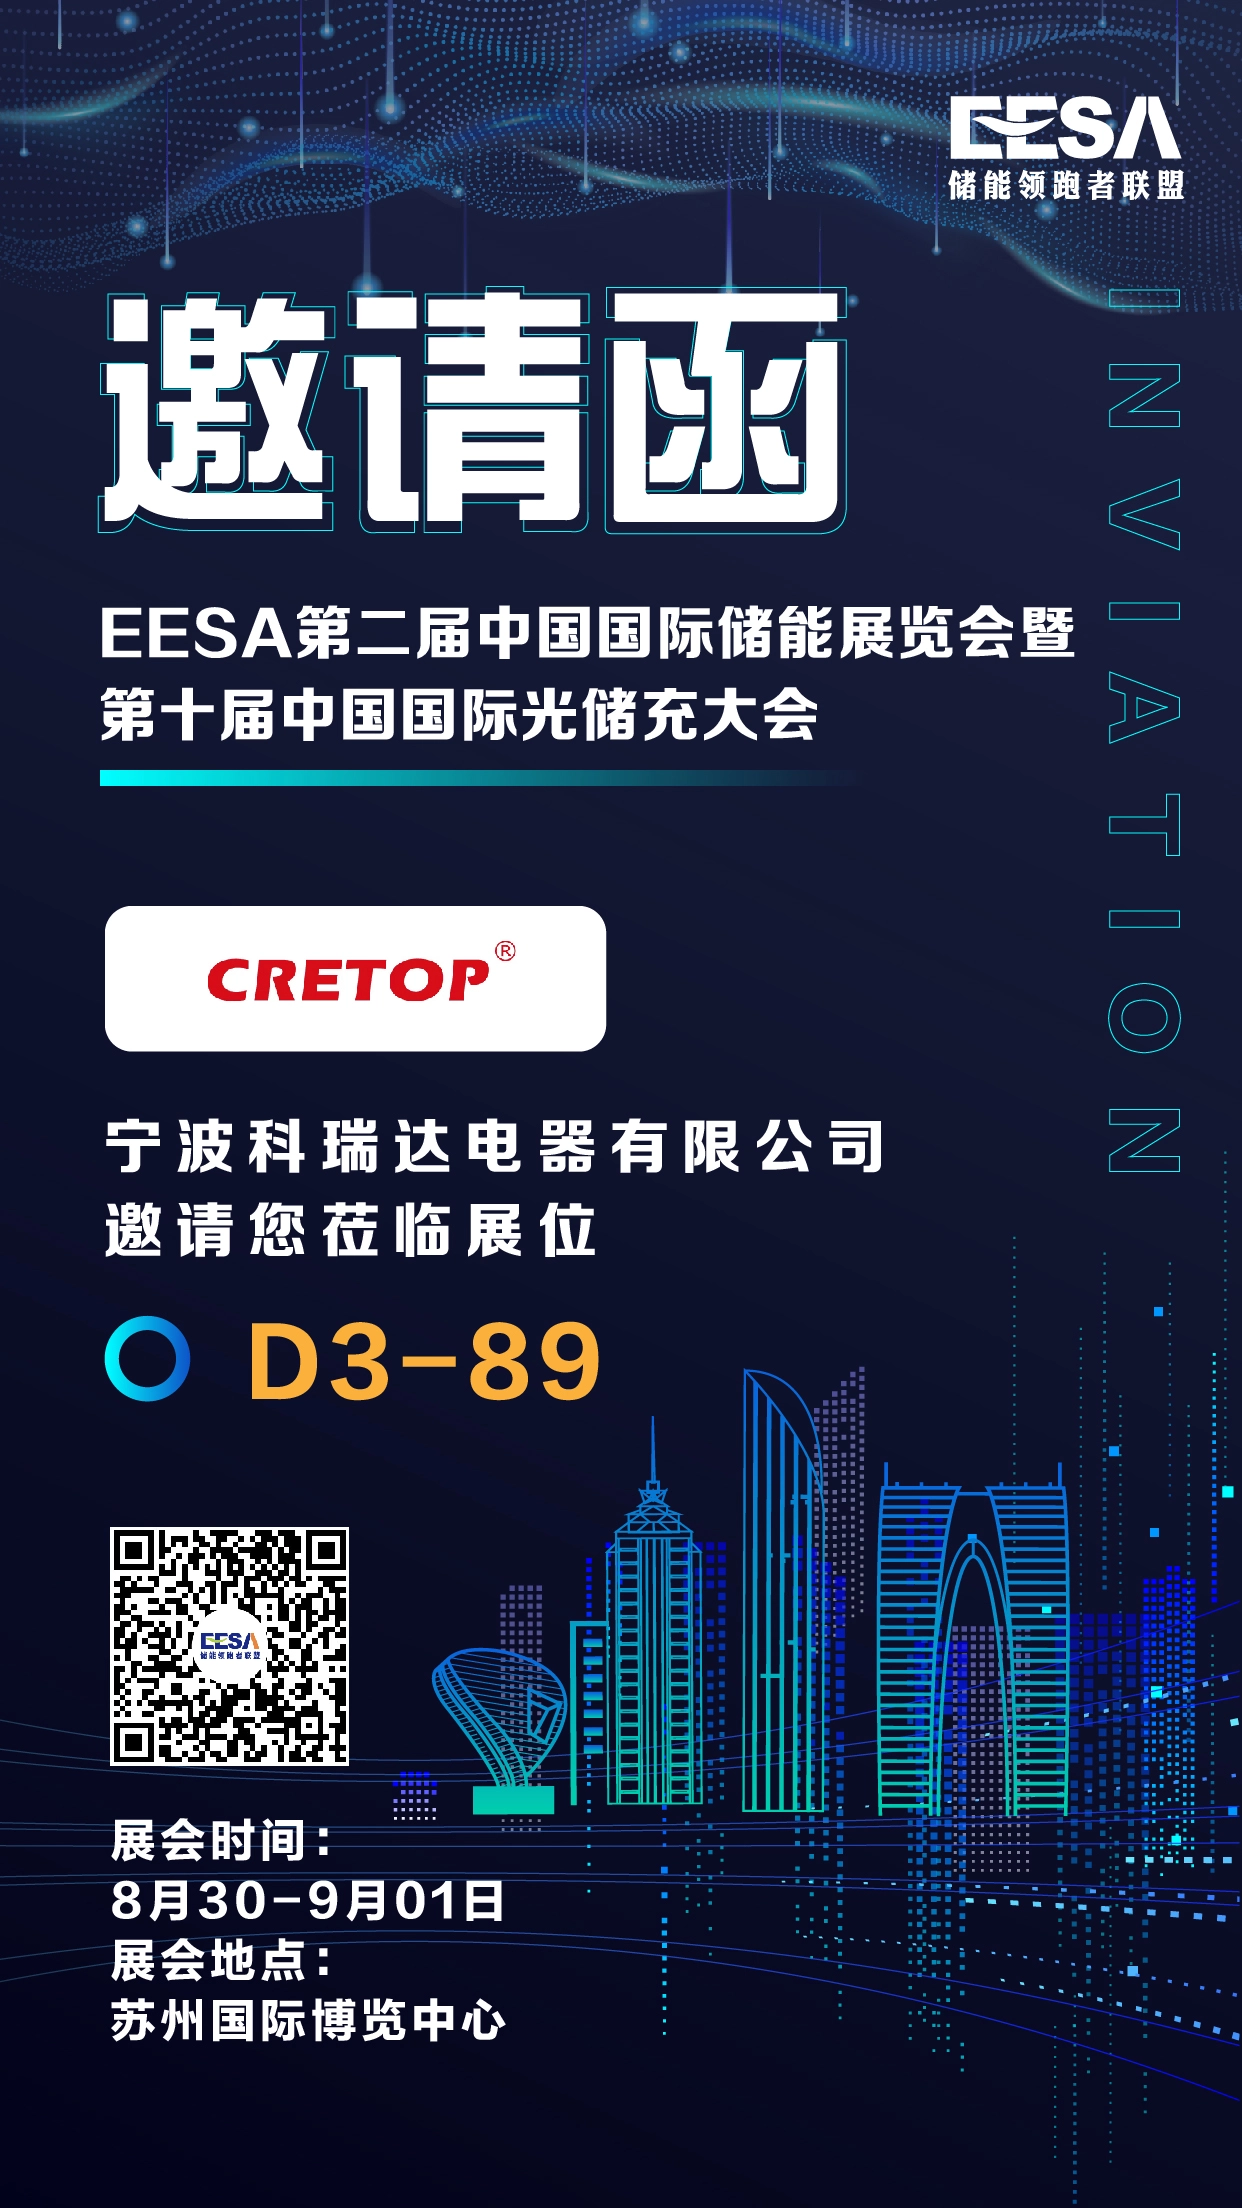 Convite de Suzhou EESA